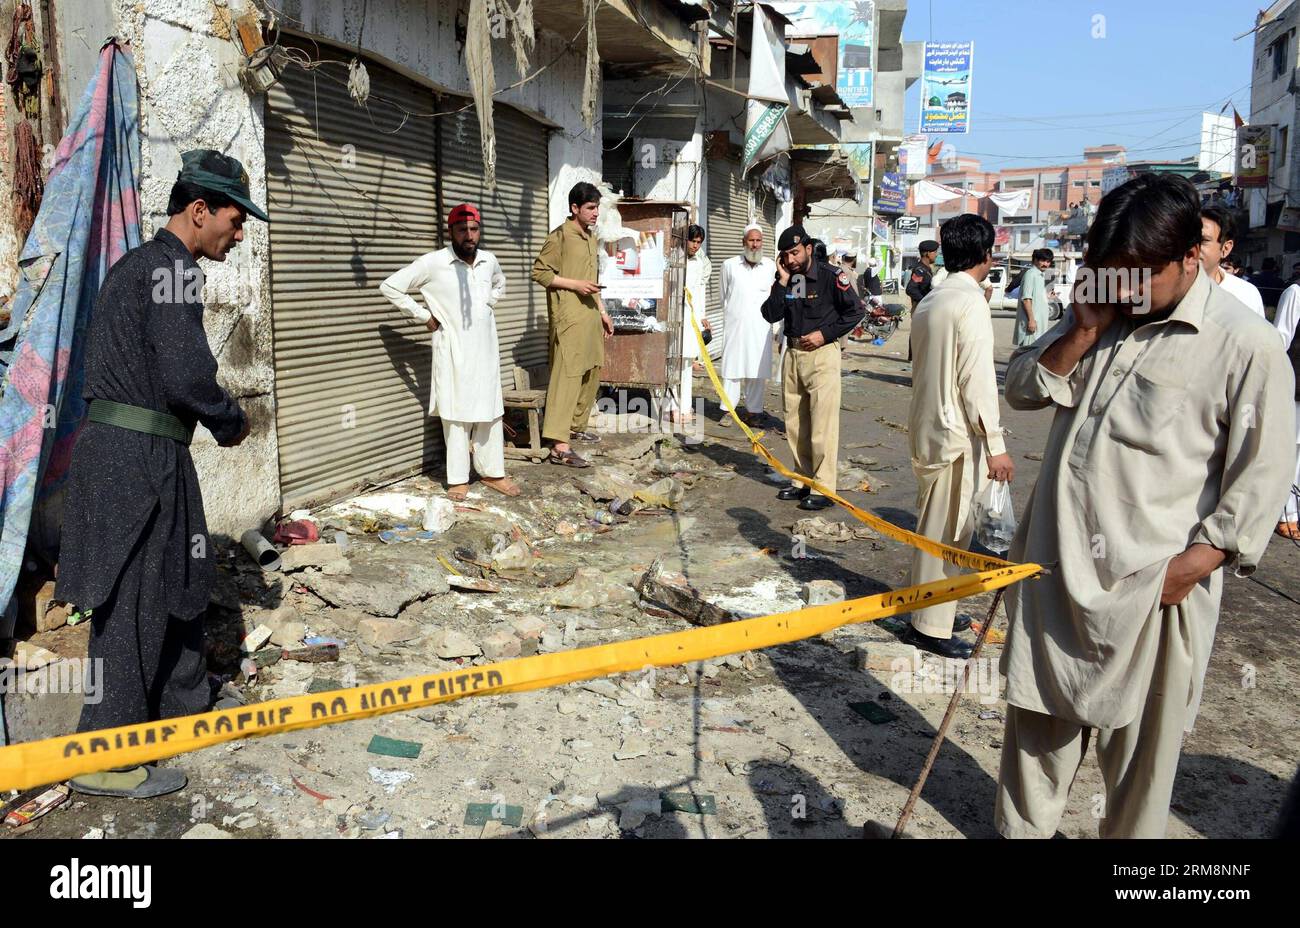 (140422) -- CHARSADDA, 22. April 2014 (Xinhua) -- pakistanische Beamte inspizieren am 22. April 2014 die Sprengstelle in Charsadda im Nordwesten Pakistans. Mindestens vier Menschen wurden getötet und 33 weitere verletzt, als am Dienstagmorgen eine Bombe in der Nähe eines Polizeifahrzeugs im nordwestlichen Charsadda-Bezirk in Pakistan explodierte, berichteten lokale Medien. (Xinhua/Ahmad Sidique) PAKISTAN -CHARSADDA-ATTACK PUBLICATIONxNOTxINxCHN Charsfield Adda 22. April 2014 XINHUA pakistanische Beamte inspizieren die Sprengstelle im Nordwesten Pakistans S Charsfield Adda AM 22. April 2014 wurden mindestens vier Prominente GETÖTET und 33 weitere verletzt Stockfoto